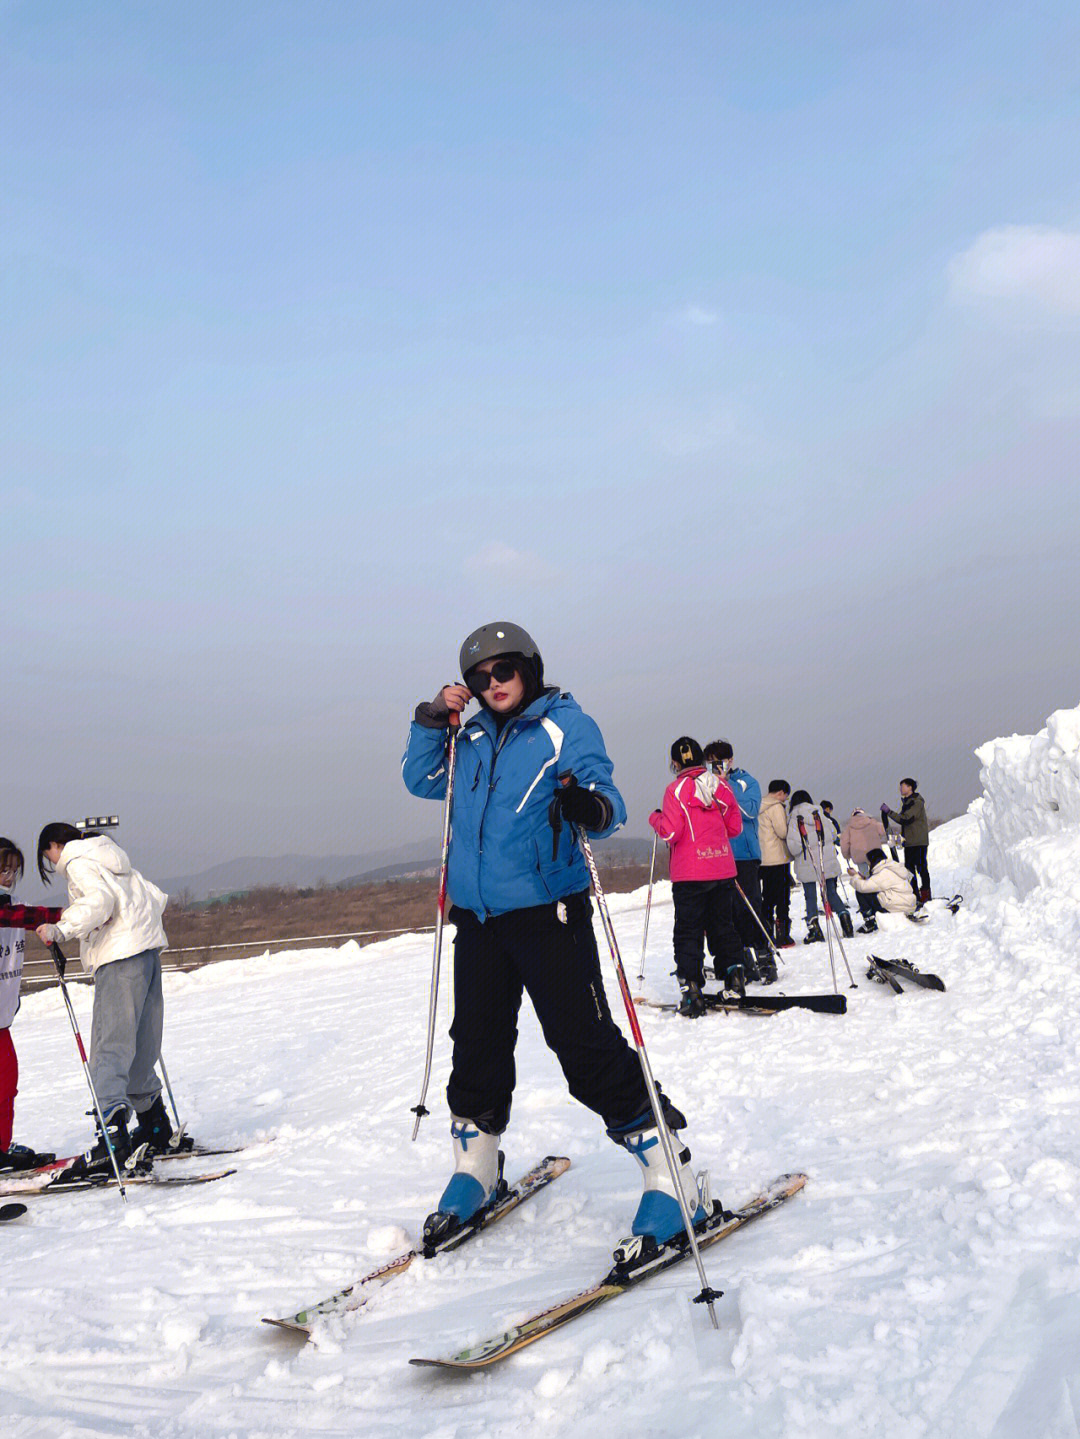 济南蟠龙山滑雪场多大图片